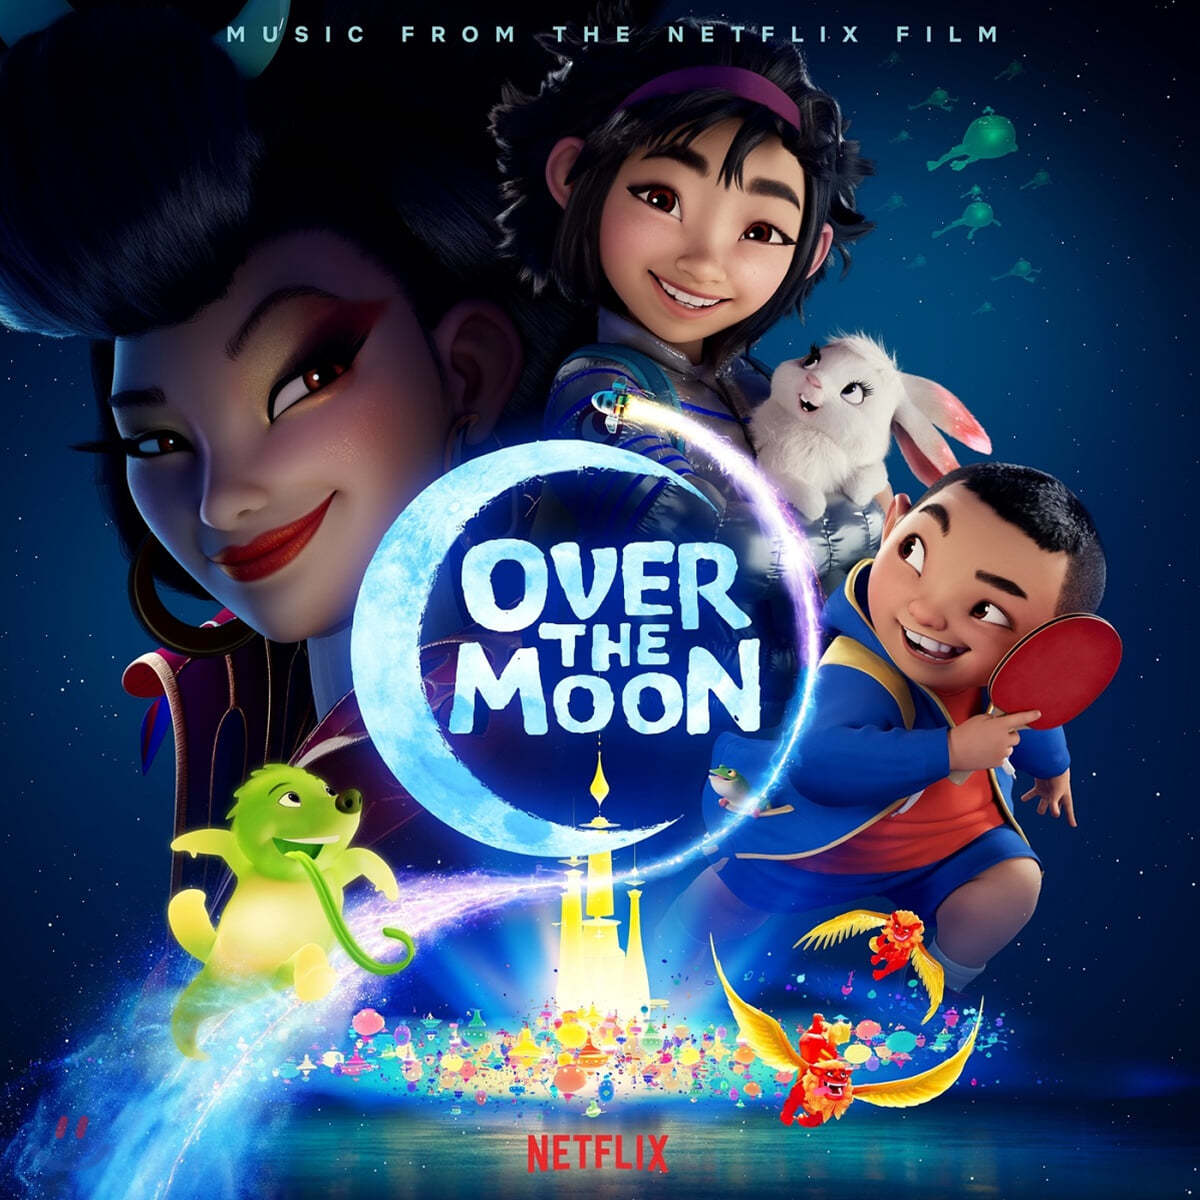 넷플릭스 '오버 더 문' 영화음악 (Over the Moon Music from the Netflix Film)